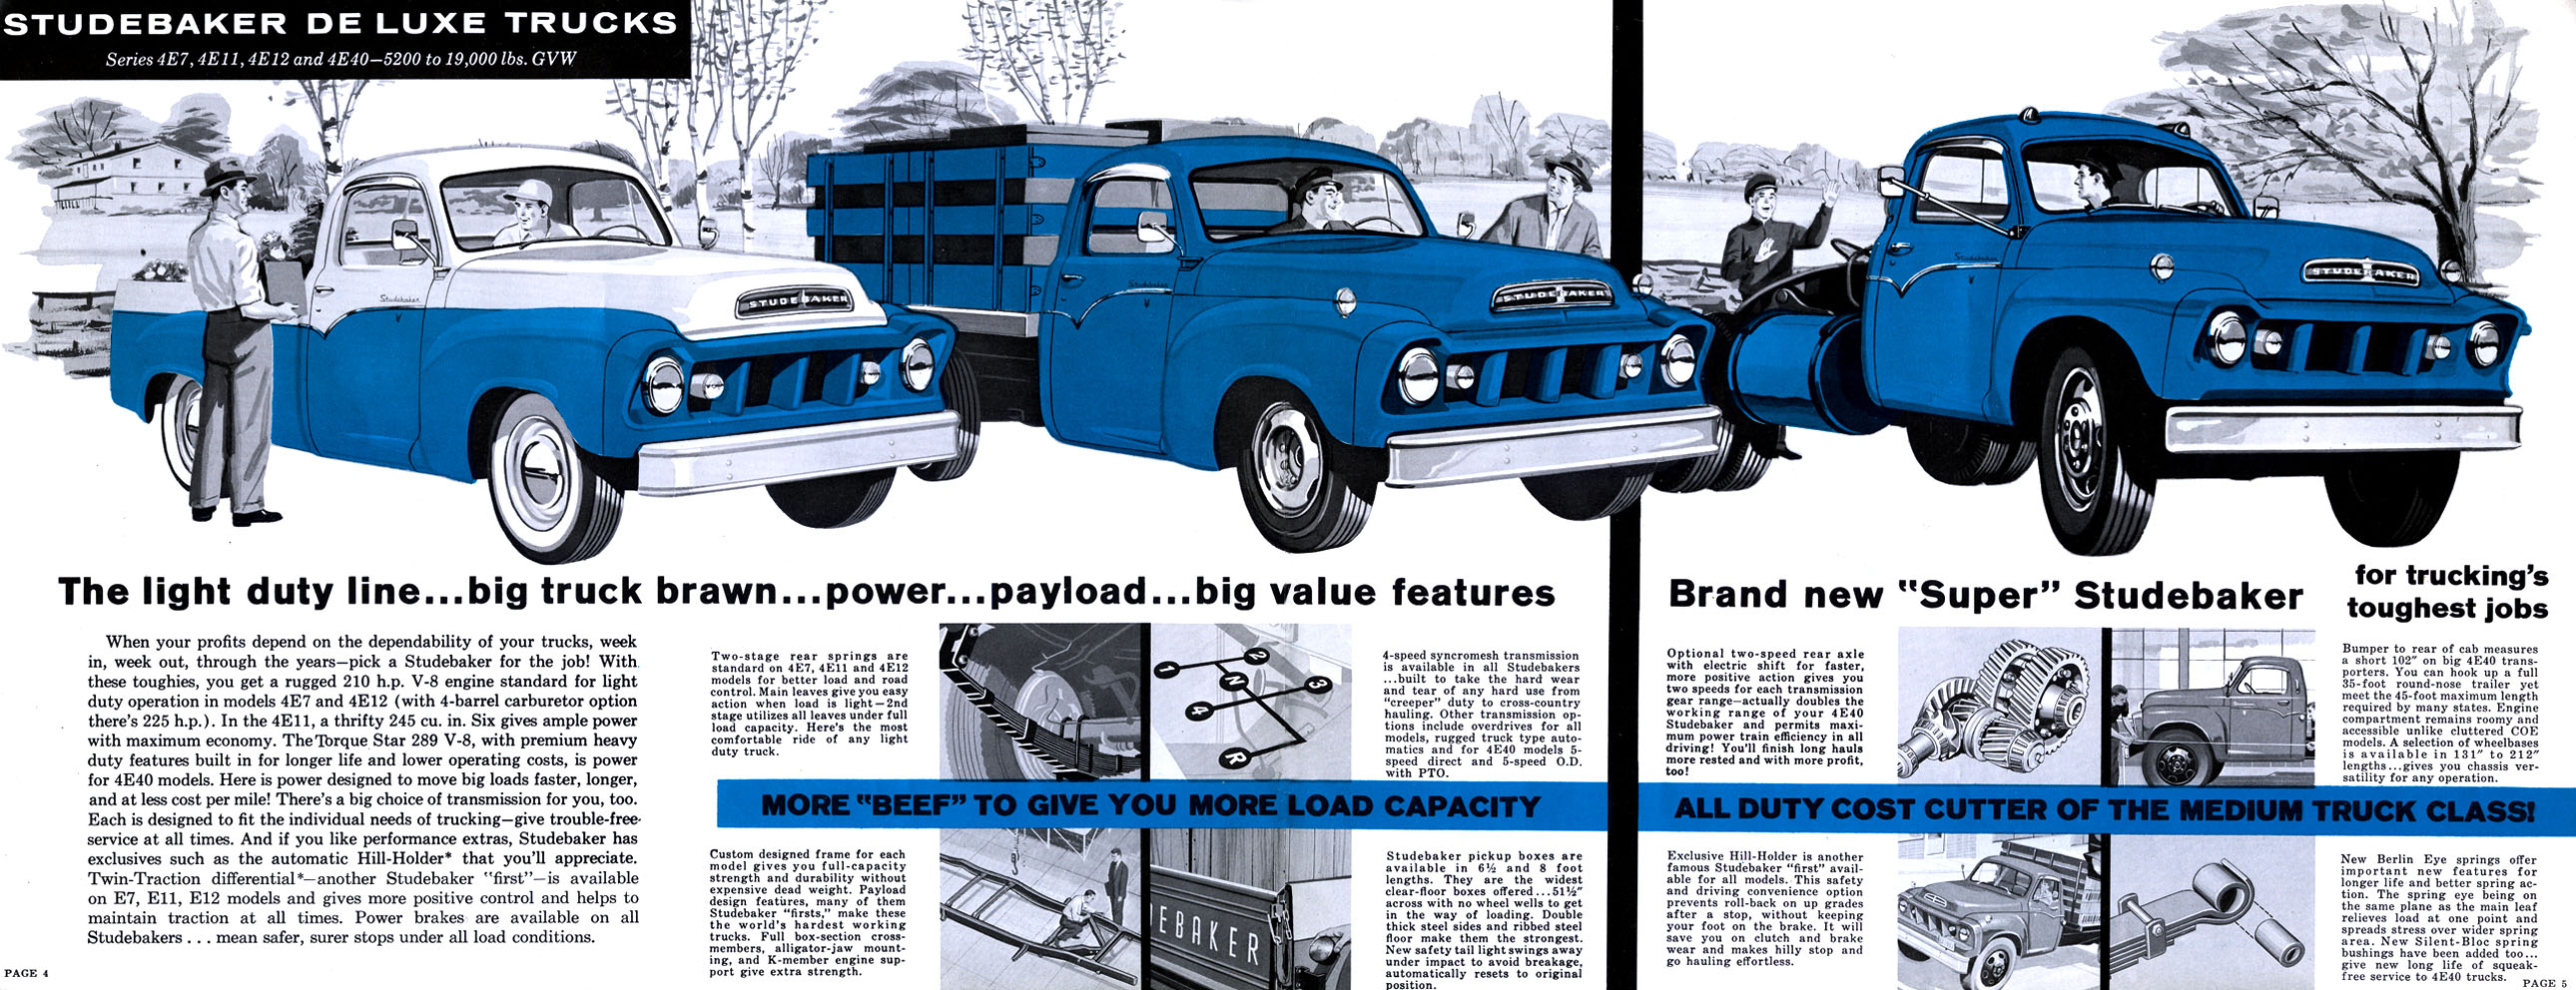 1959 Studebaker Trucks-04-05